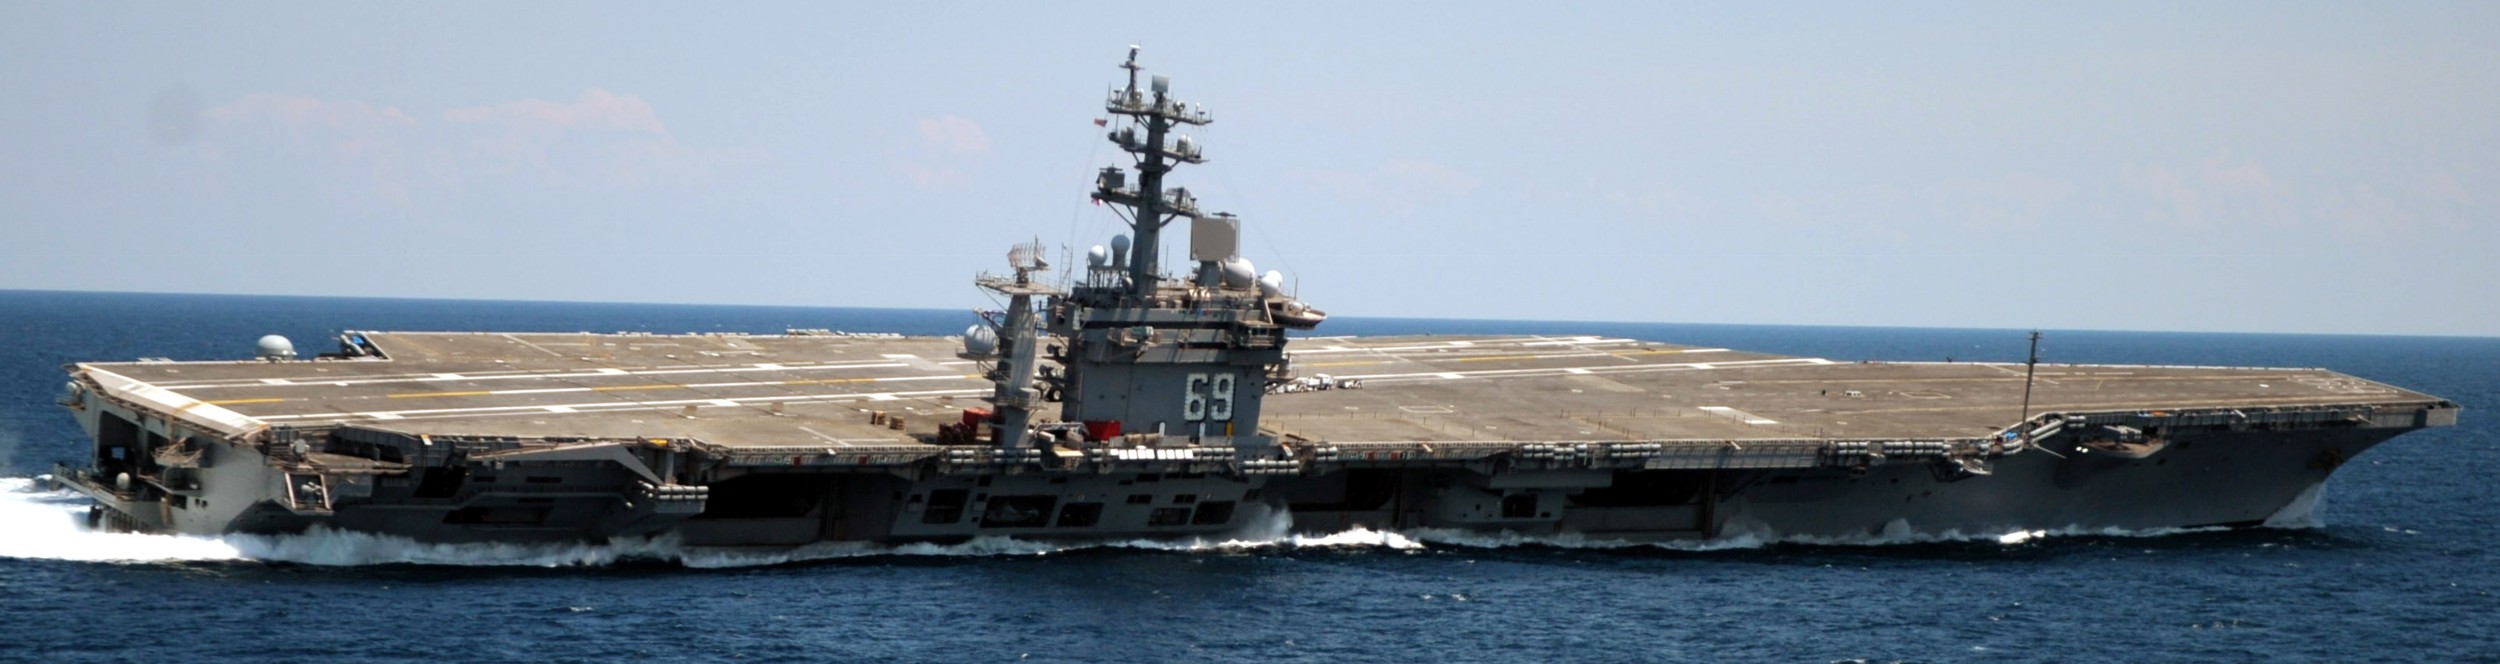 uss dwight d. eisenhower cvn-69 aircraft carrier 2011 148